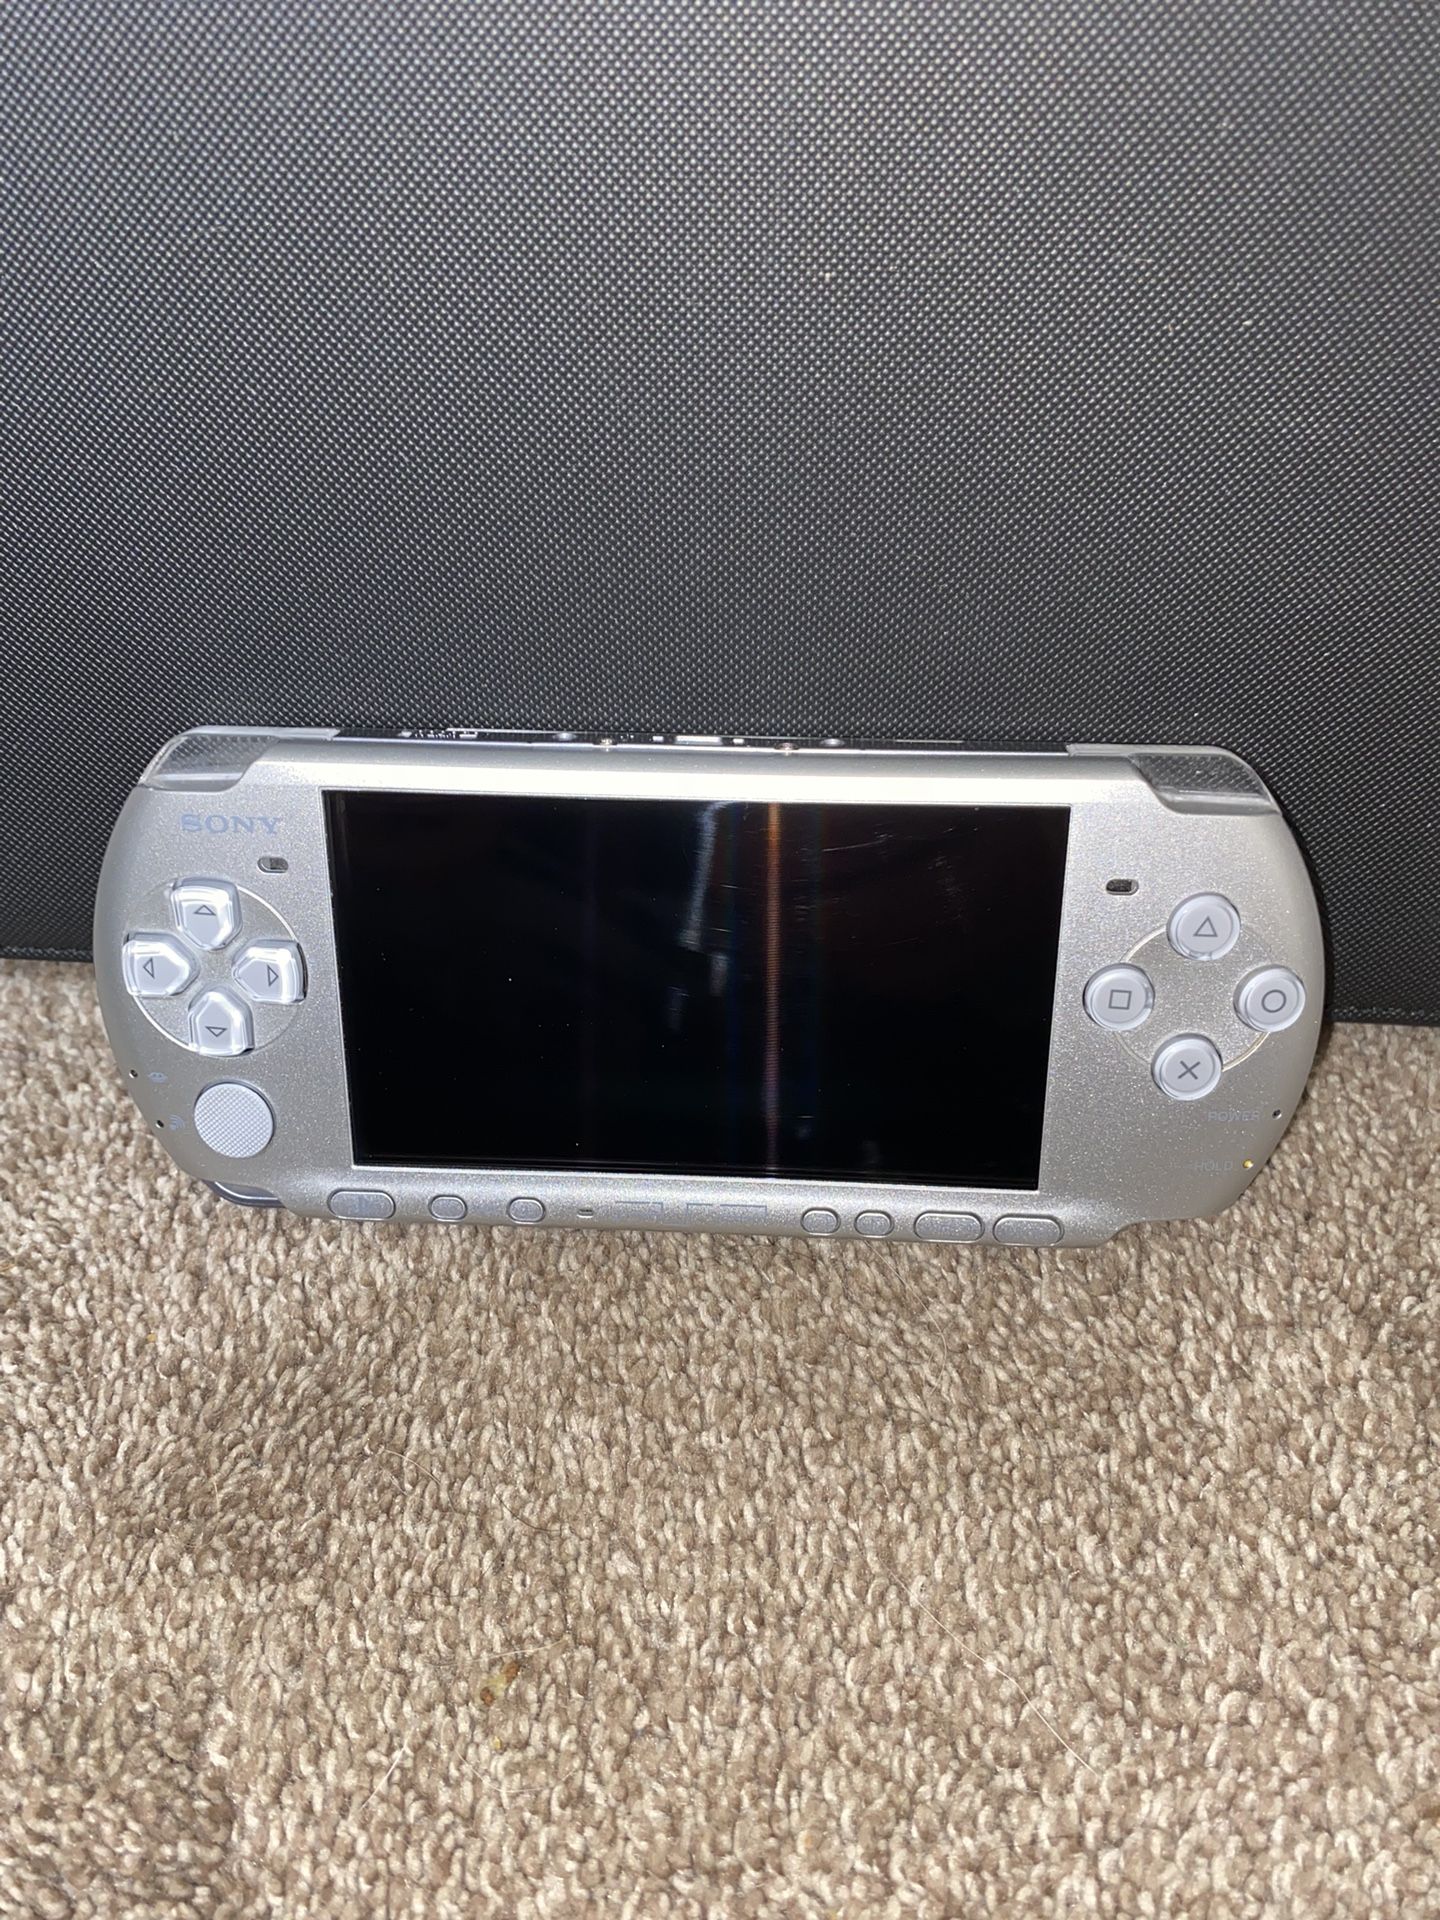 PSP 3000 Modded